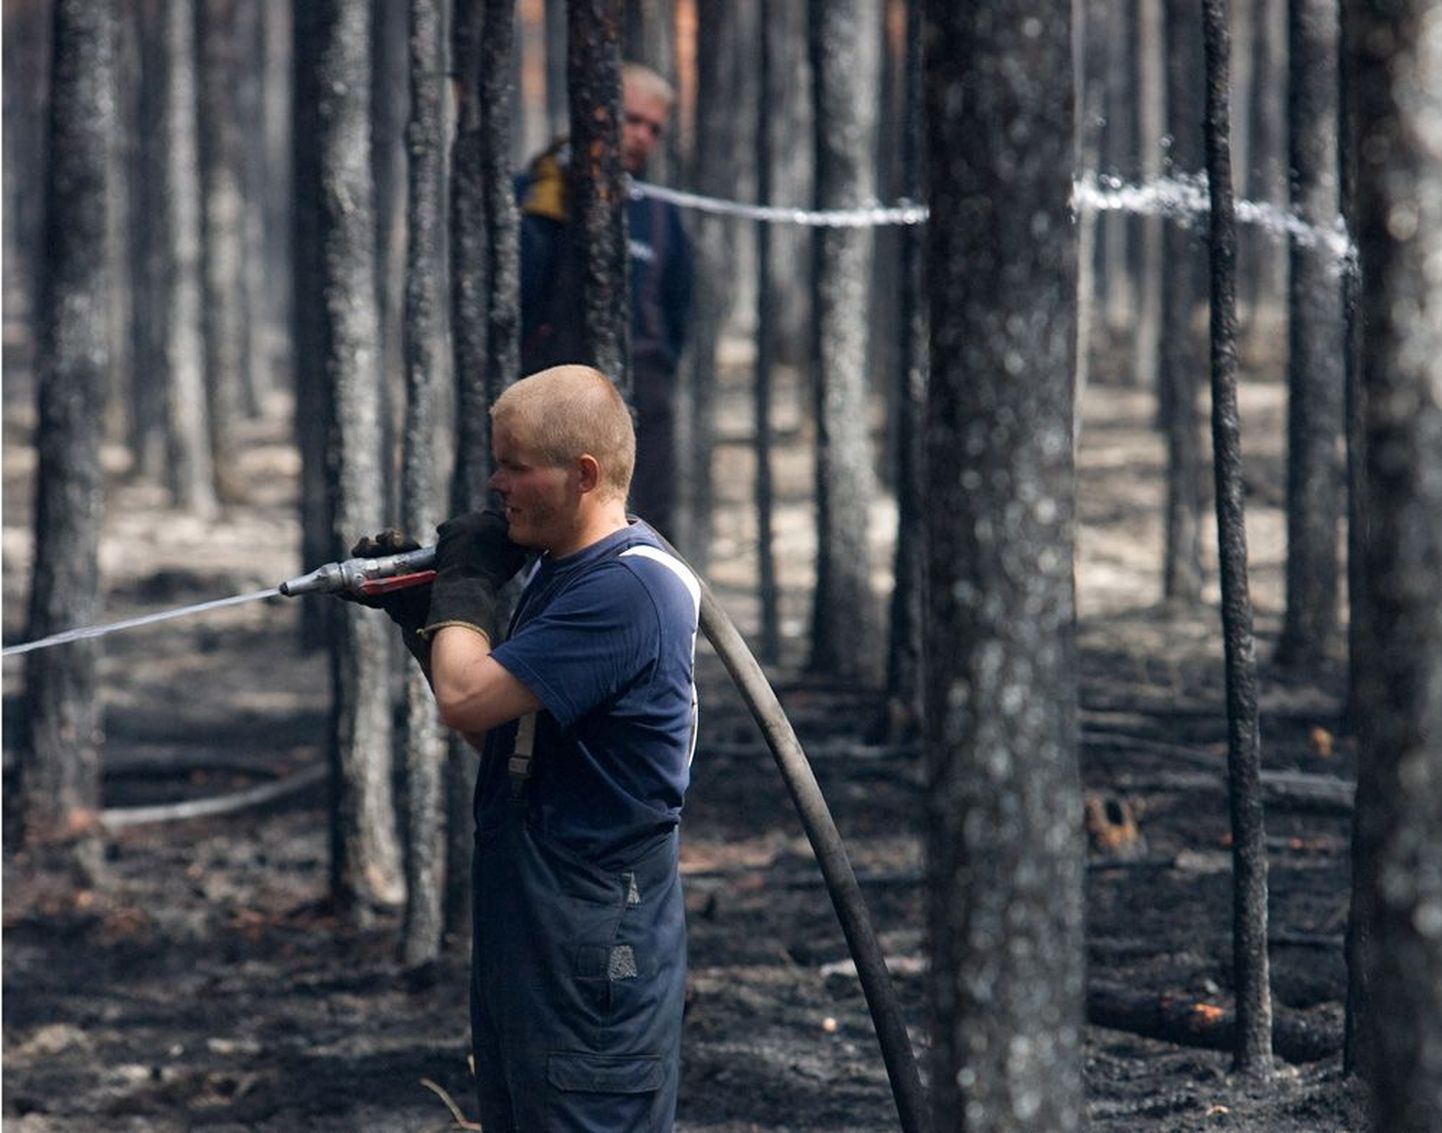 Harjumaa ja Läänemaa piiril Vihterpalus on aegade jooksul olnud mitmeid väga suuri metsapõlenguid. 2008. aasta mai lõpus tuli päästjatel kustutada seal 850 hektarit metsa ja raba.